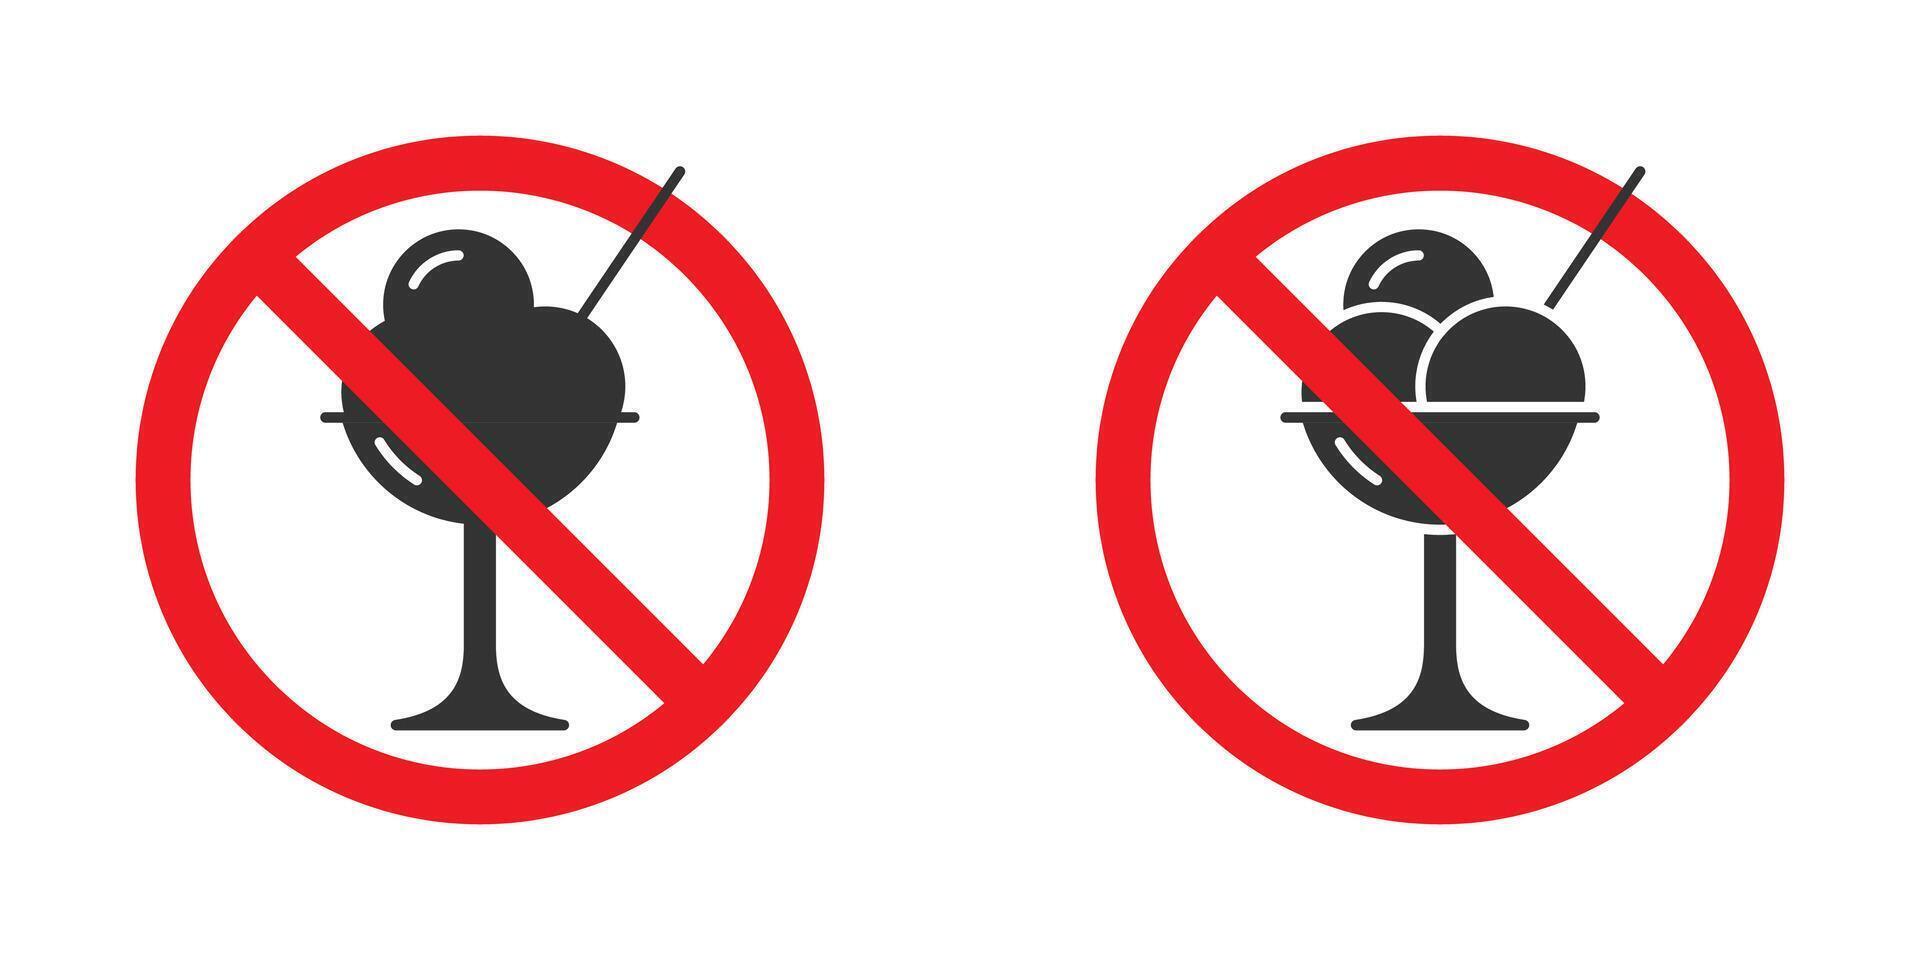 ghiaccio crema proibito cartello. vettore illustrazione.